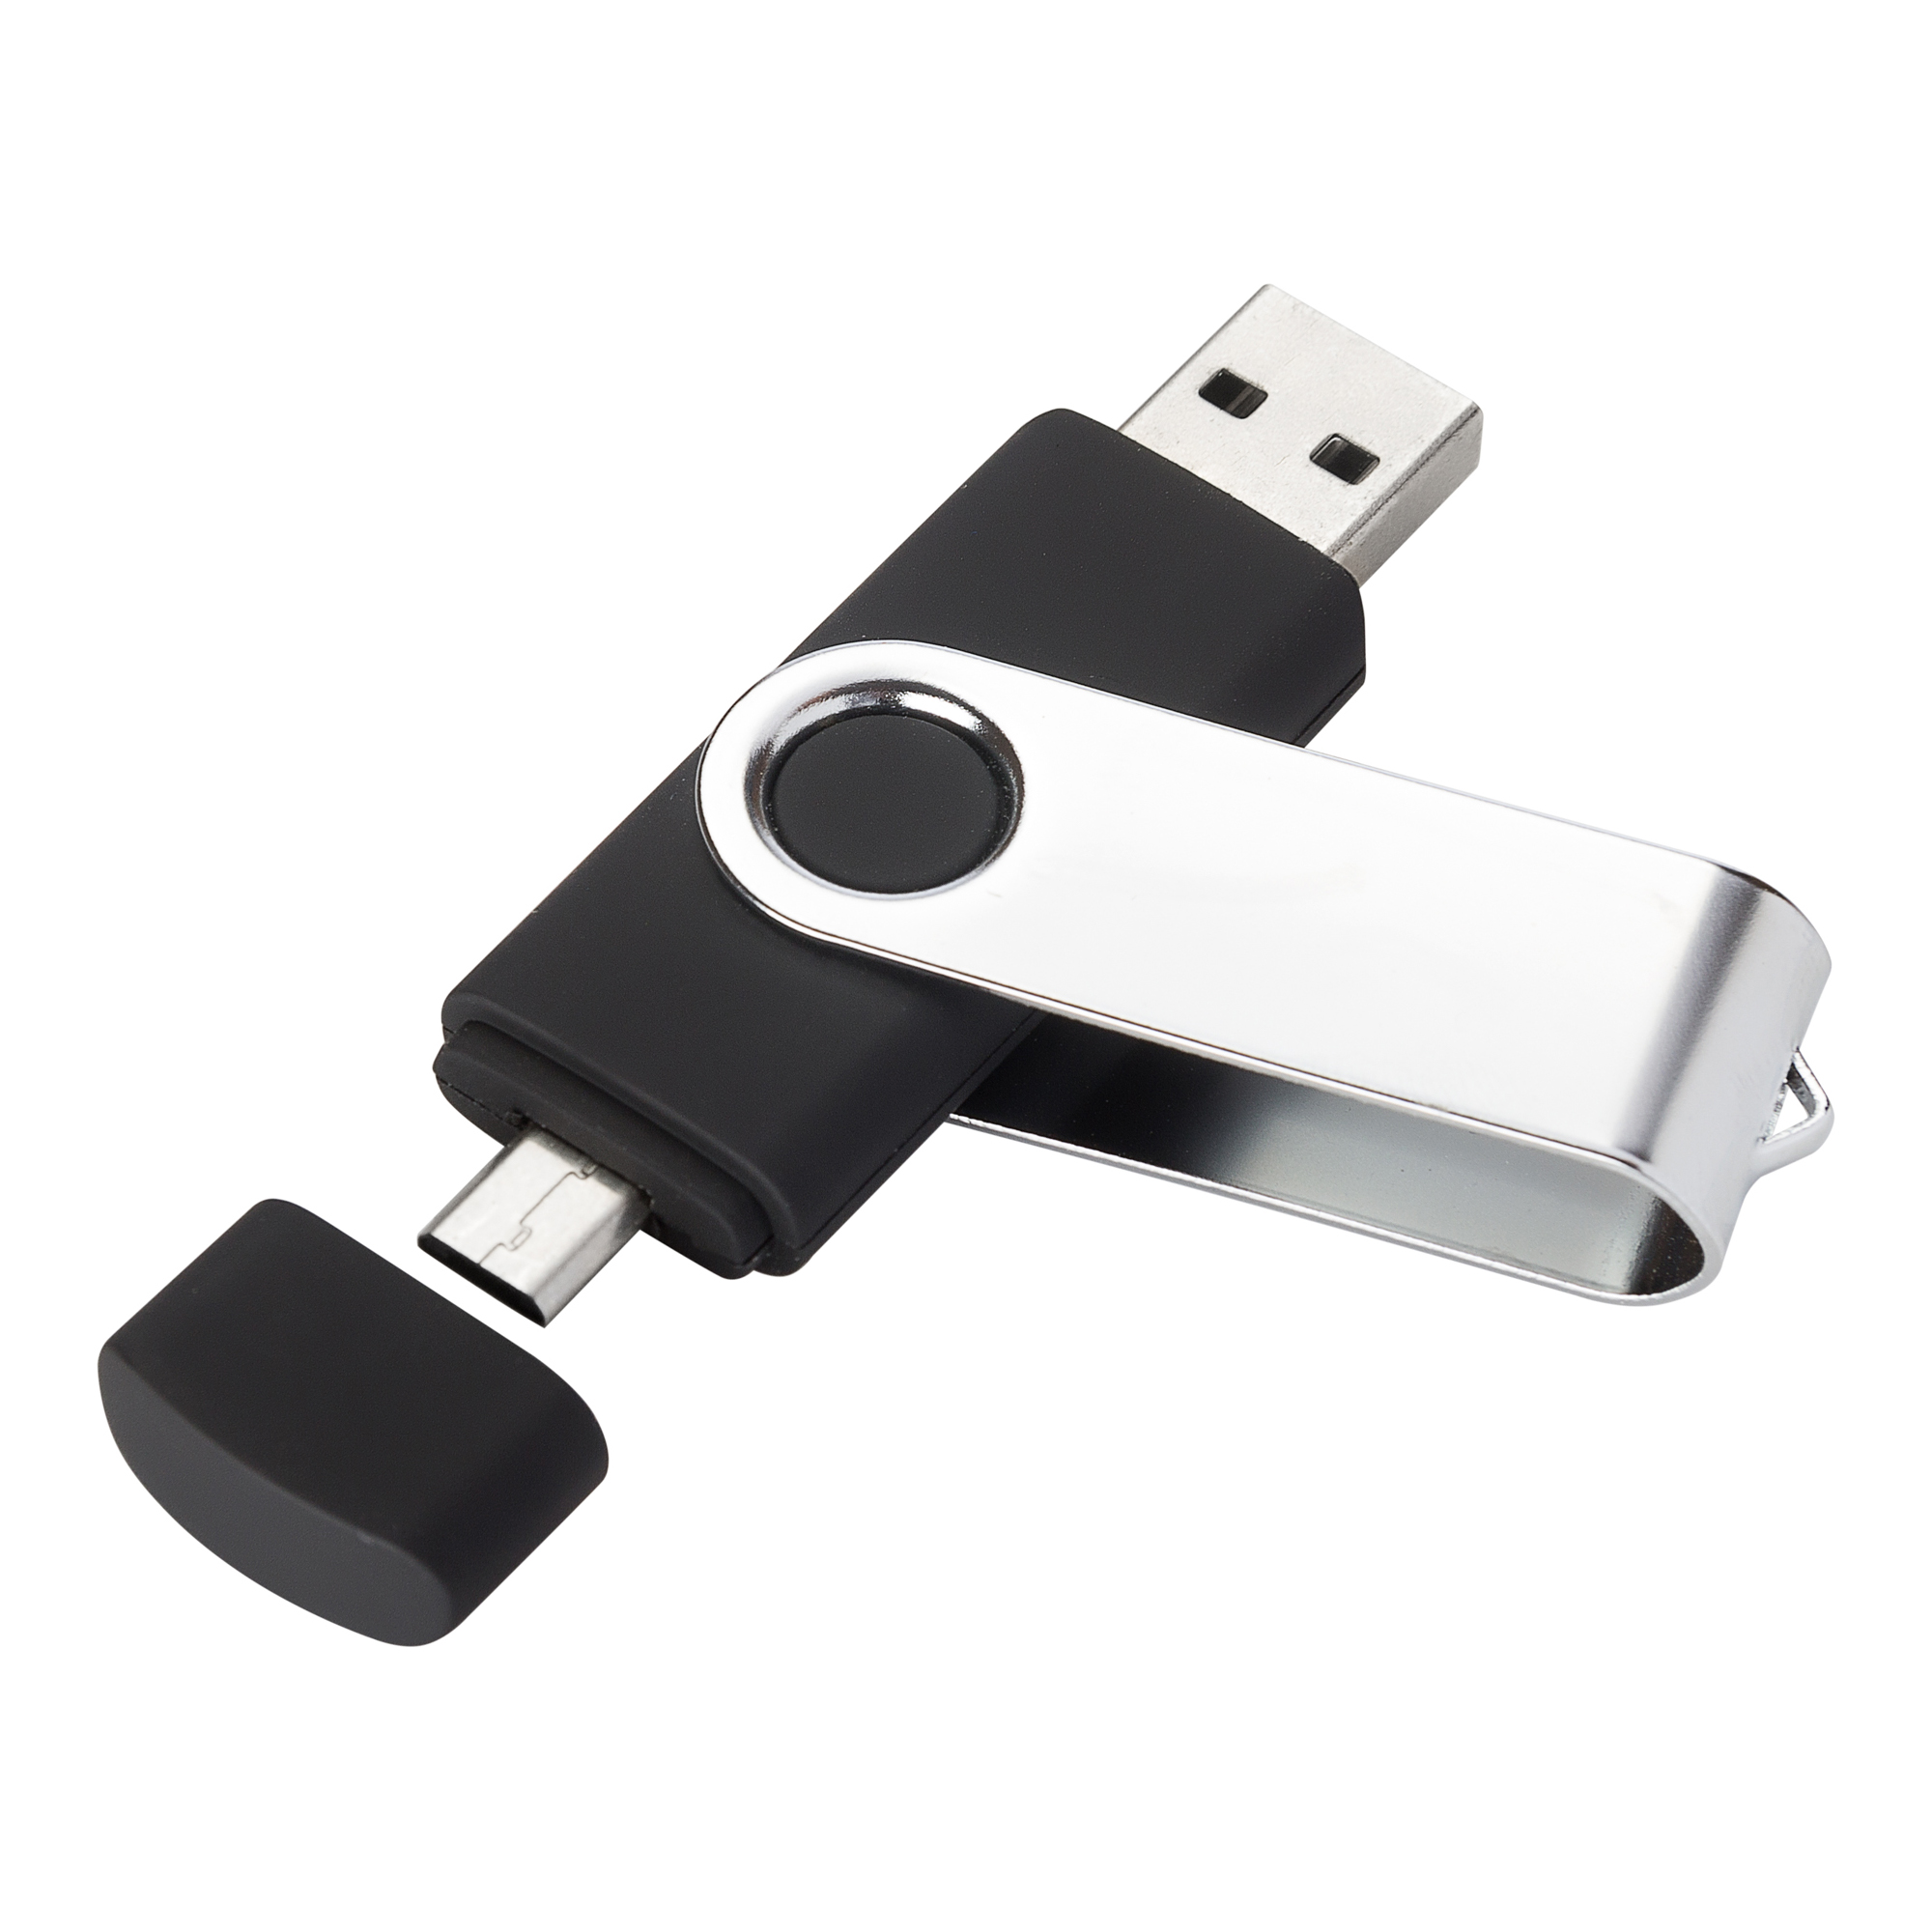 USB-флешка модель 104 OTG, объем памяти 128 GB, цвет черный